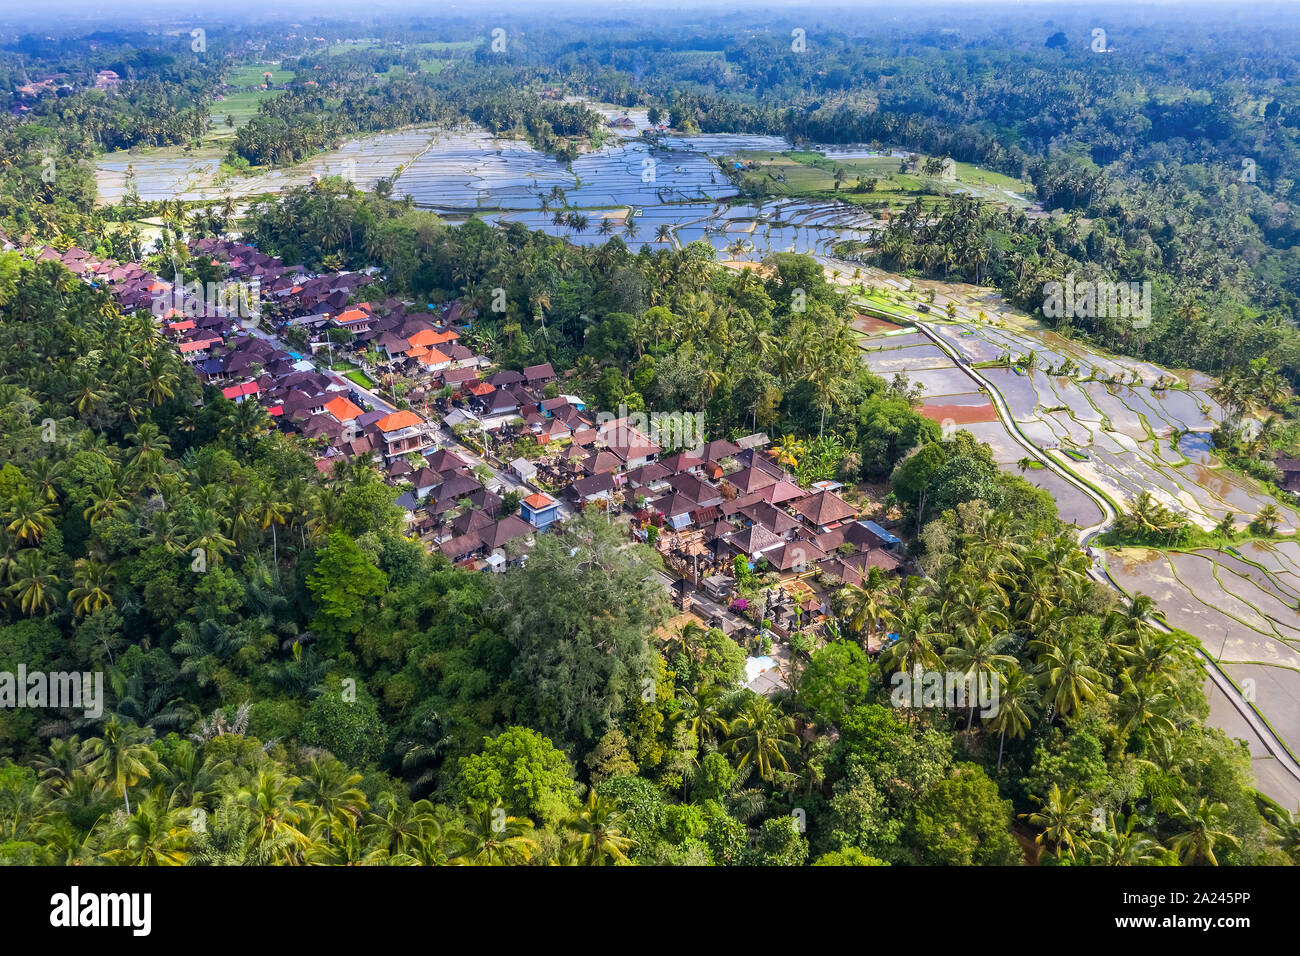 Vue aérienne du village de Tegallalang et champ de riz terrasse, Bandung, Ouest de Java en Indonésie, en Asie. Image libre de droit stock de haute qualité de Bali. Banque D'Images